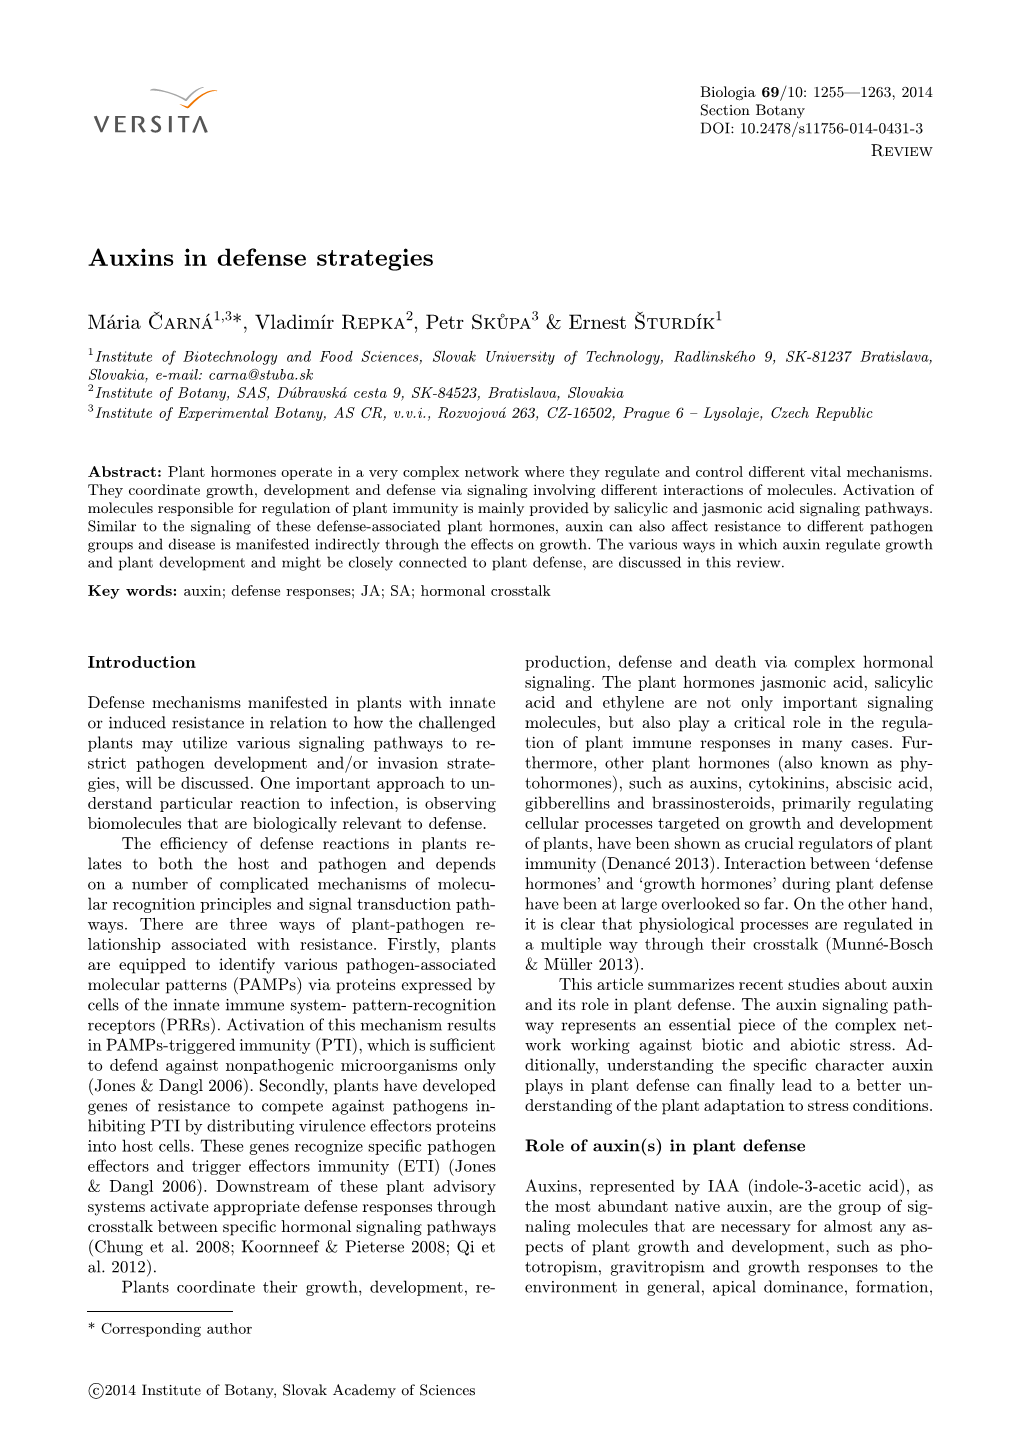 Auxins in Defense Strategies